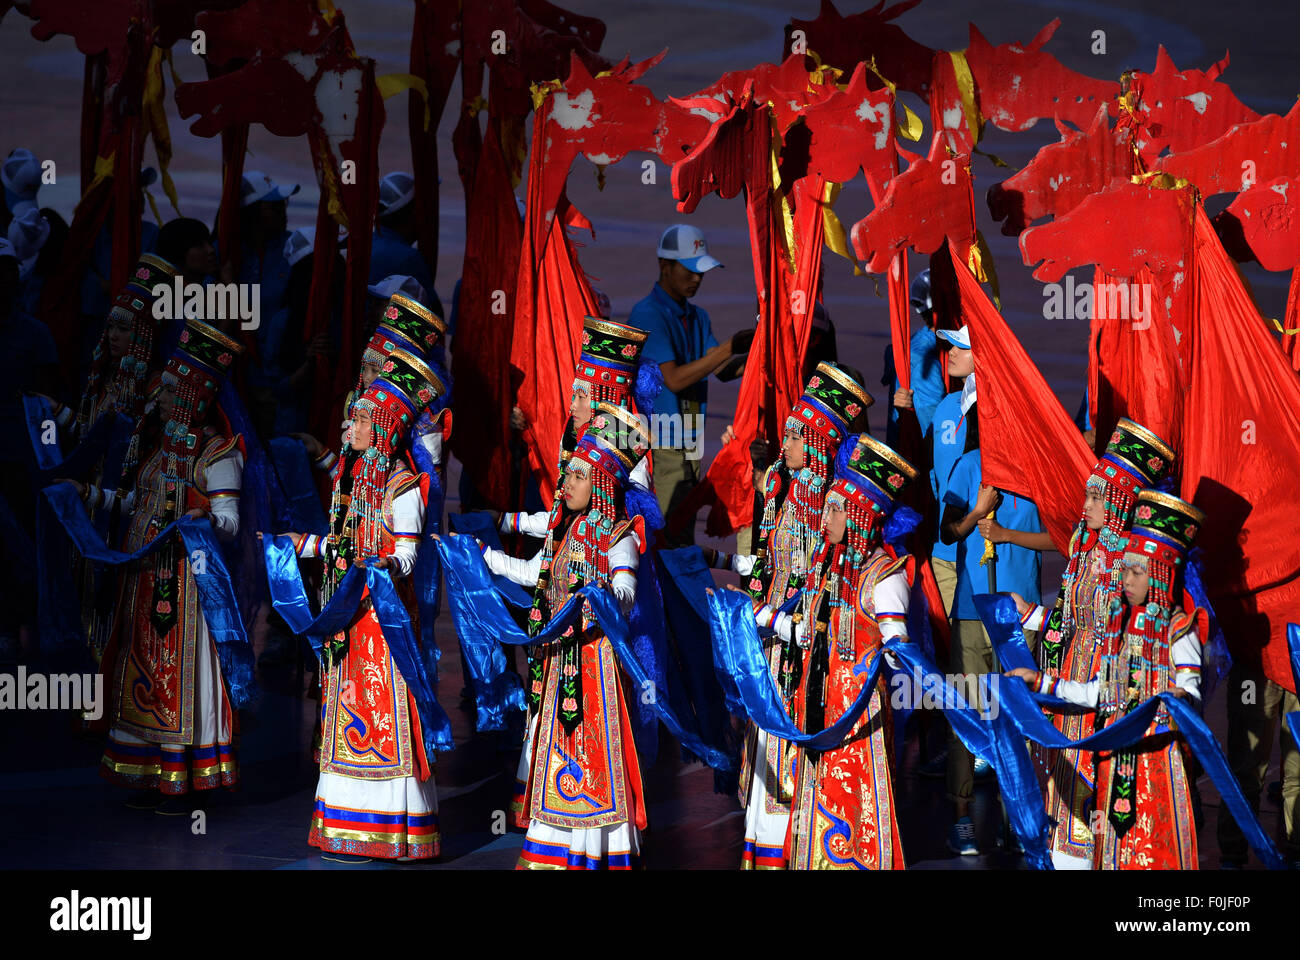 L'Ordos, Chine, région autonome de Mongolie intérieure. Août 17, 2015. Les artistes interprètes ou exécutants présents hadas, une sorte de cadeau d'accueil de Mongolie, sur la cérémonie de clôture des 10e Jeux traditionnels des minorités ethniques de la Chine dans l'Ordos, Chine du nord, région autonome de Mongolie intérieure, le 17 août, 2015. Le 9-journée 10e Jeux traditionnels des minorités ethniques de la Chine a fermé ici sur Augest 17. Credit : Ren Junchuan/Xinhua/Alamy Live News Banque D'Images